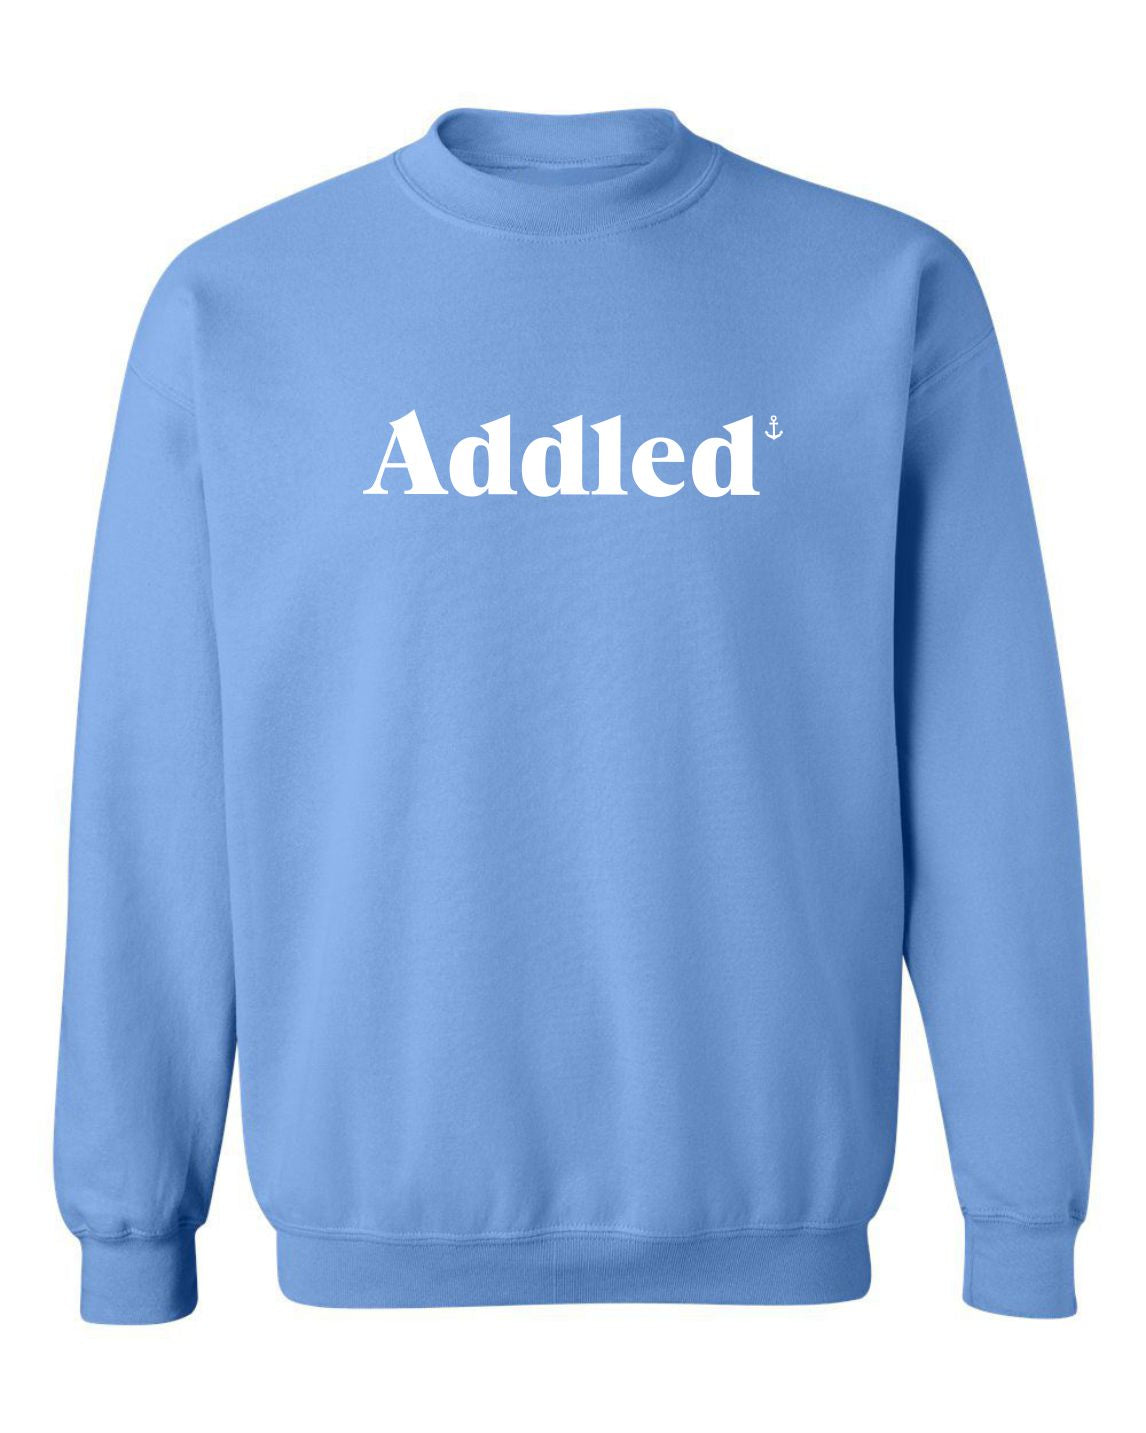 "Addled" Unisex Crewneck Sweatshirt